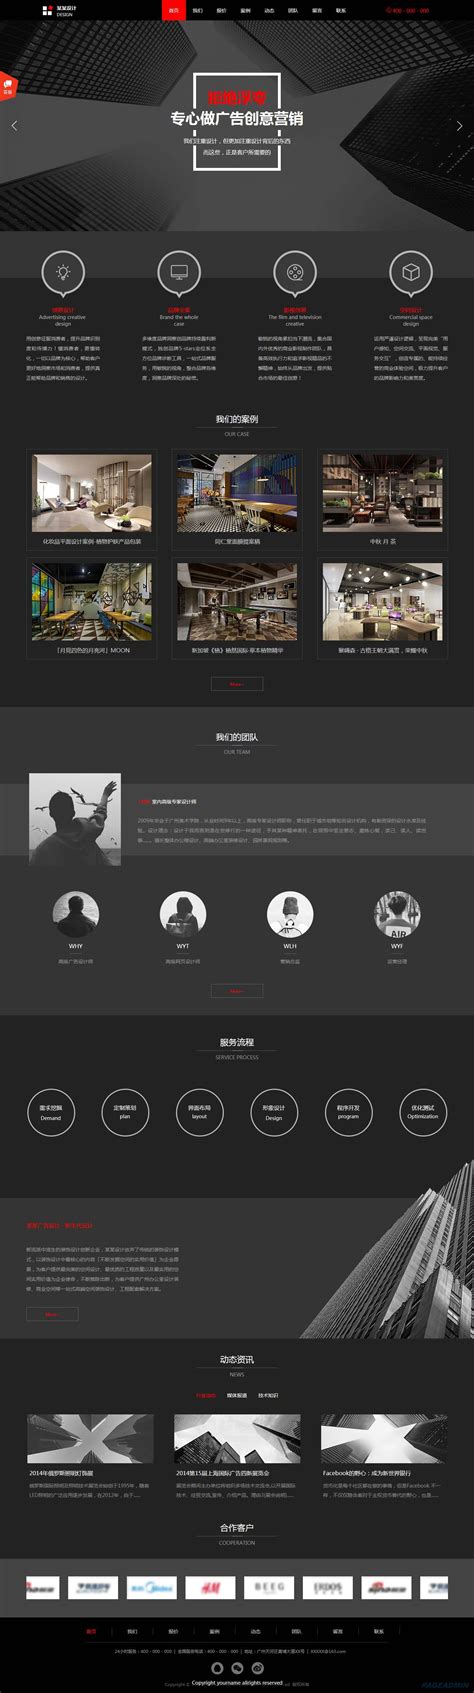 一套创意网站模板设计-网站和移动网站设计和开发商业应用程序营销图形设计社交媒体应用程序的矢量图概念-易于编辑素材-高清图片-摄影照片-寻图免费打包下载